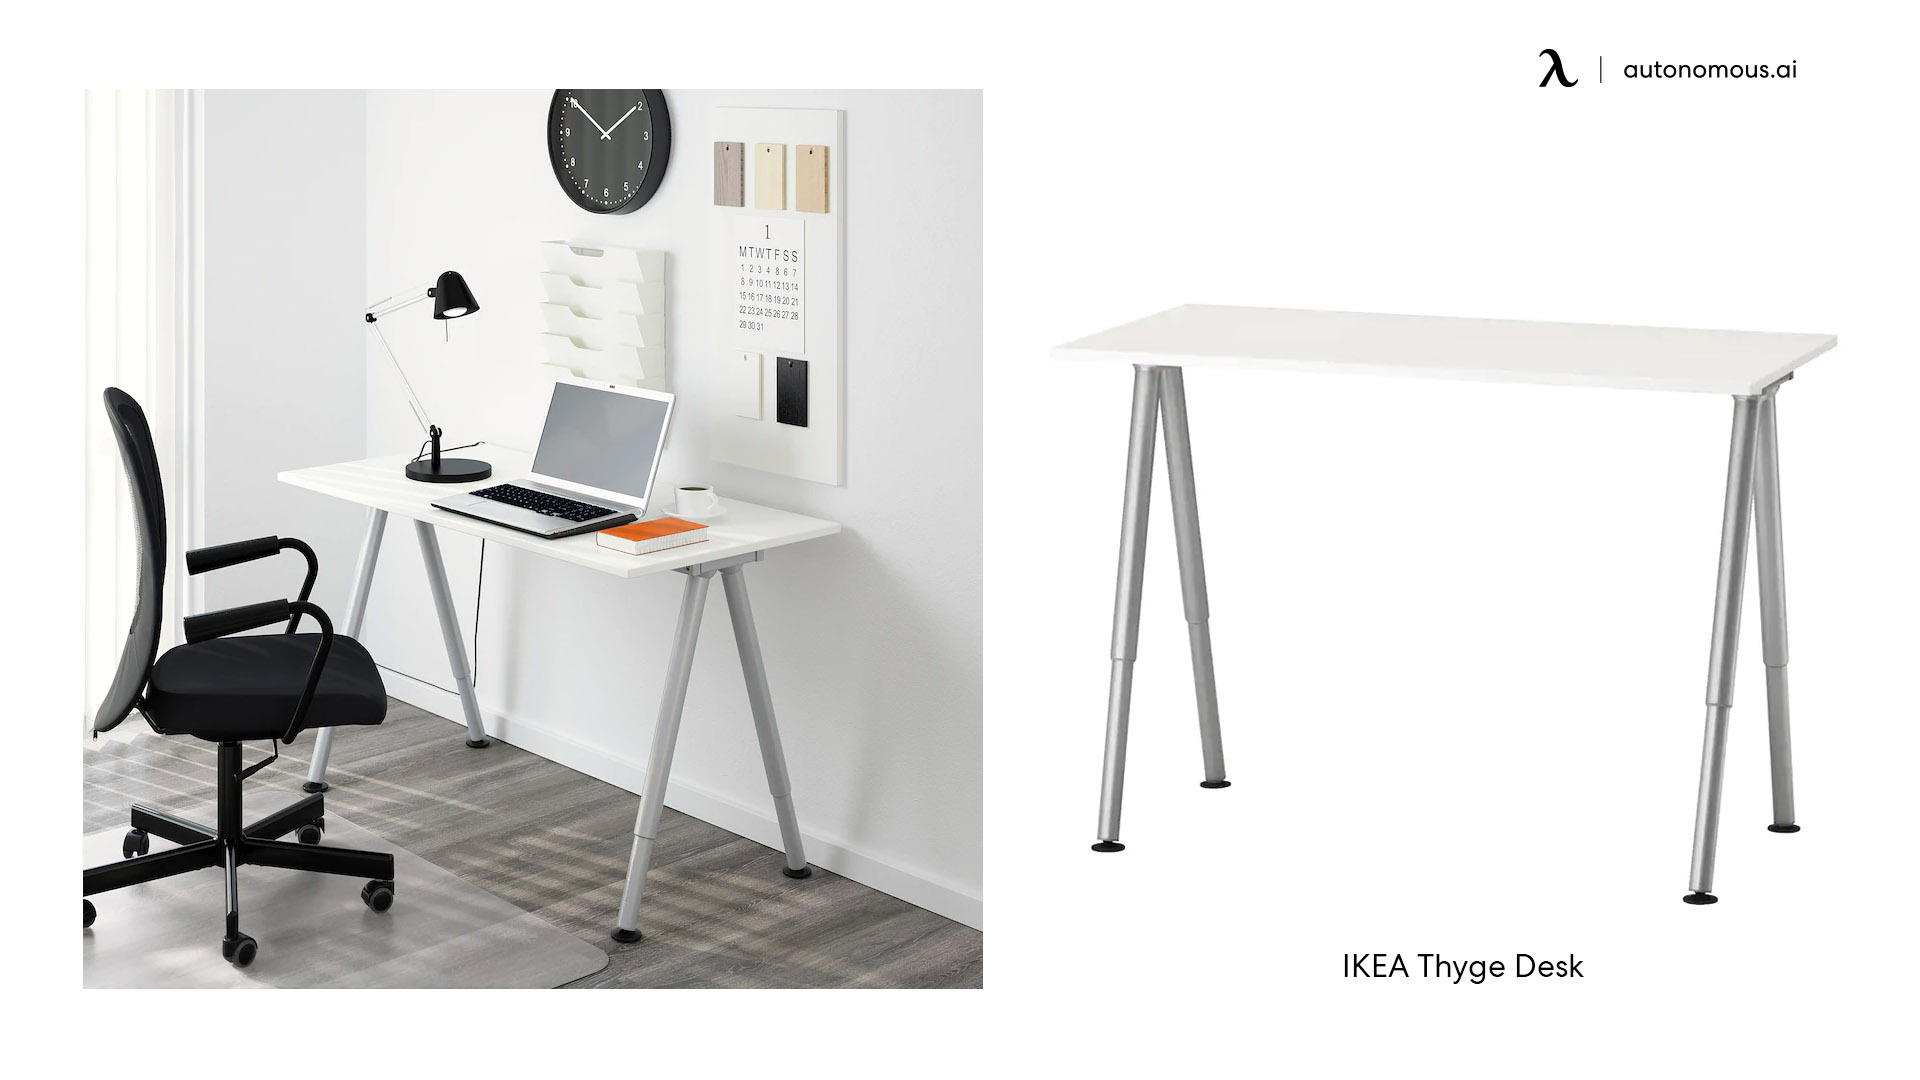 IKEA Thyge Desk